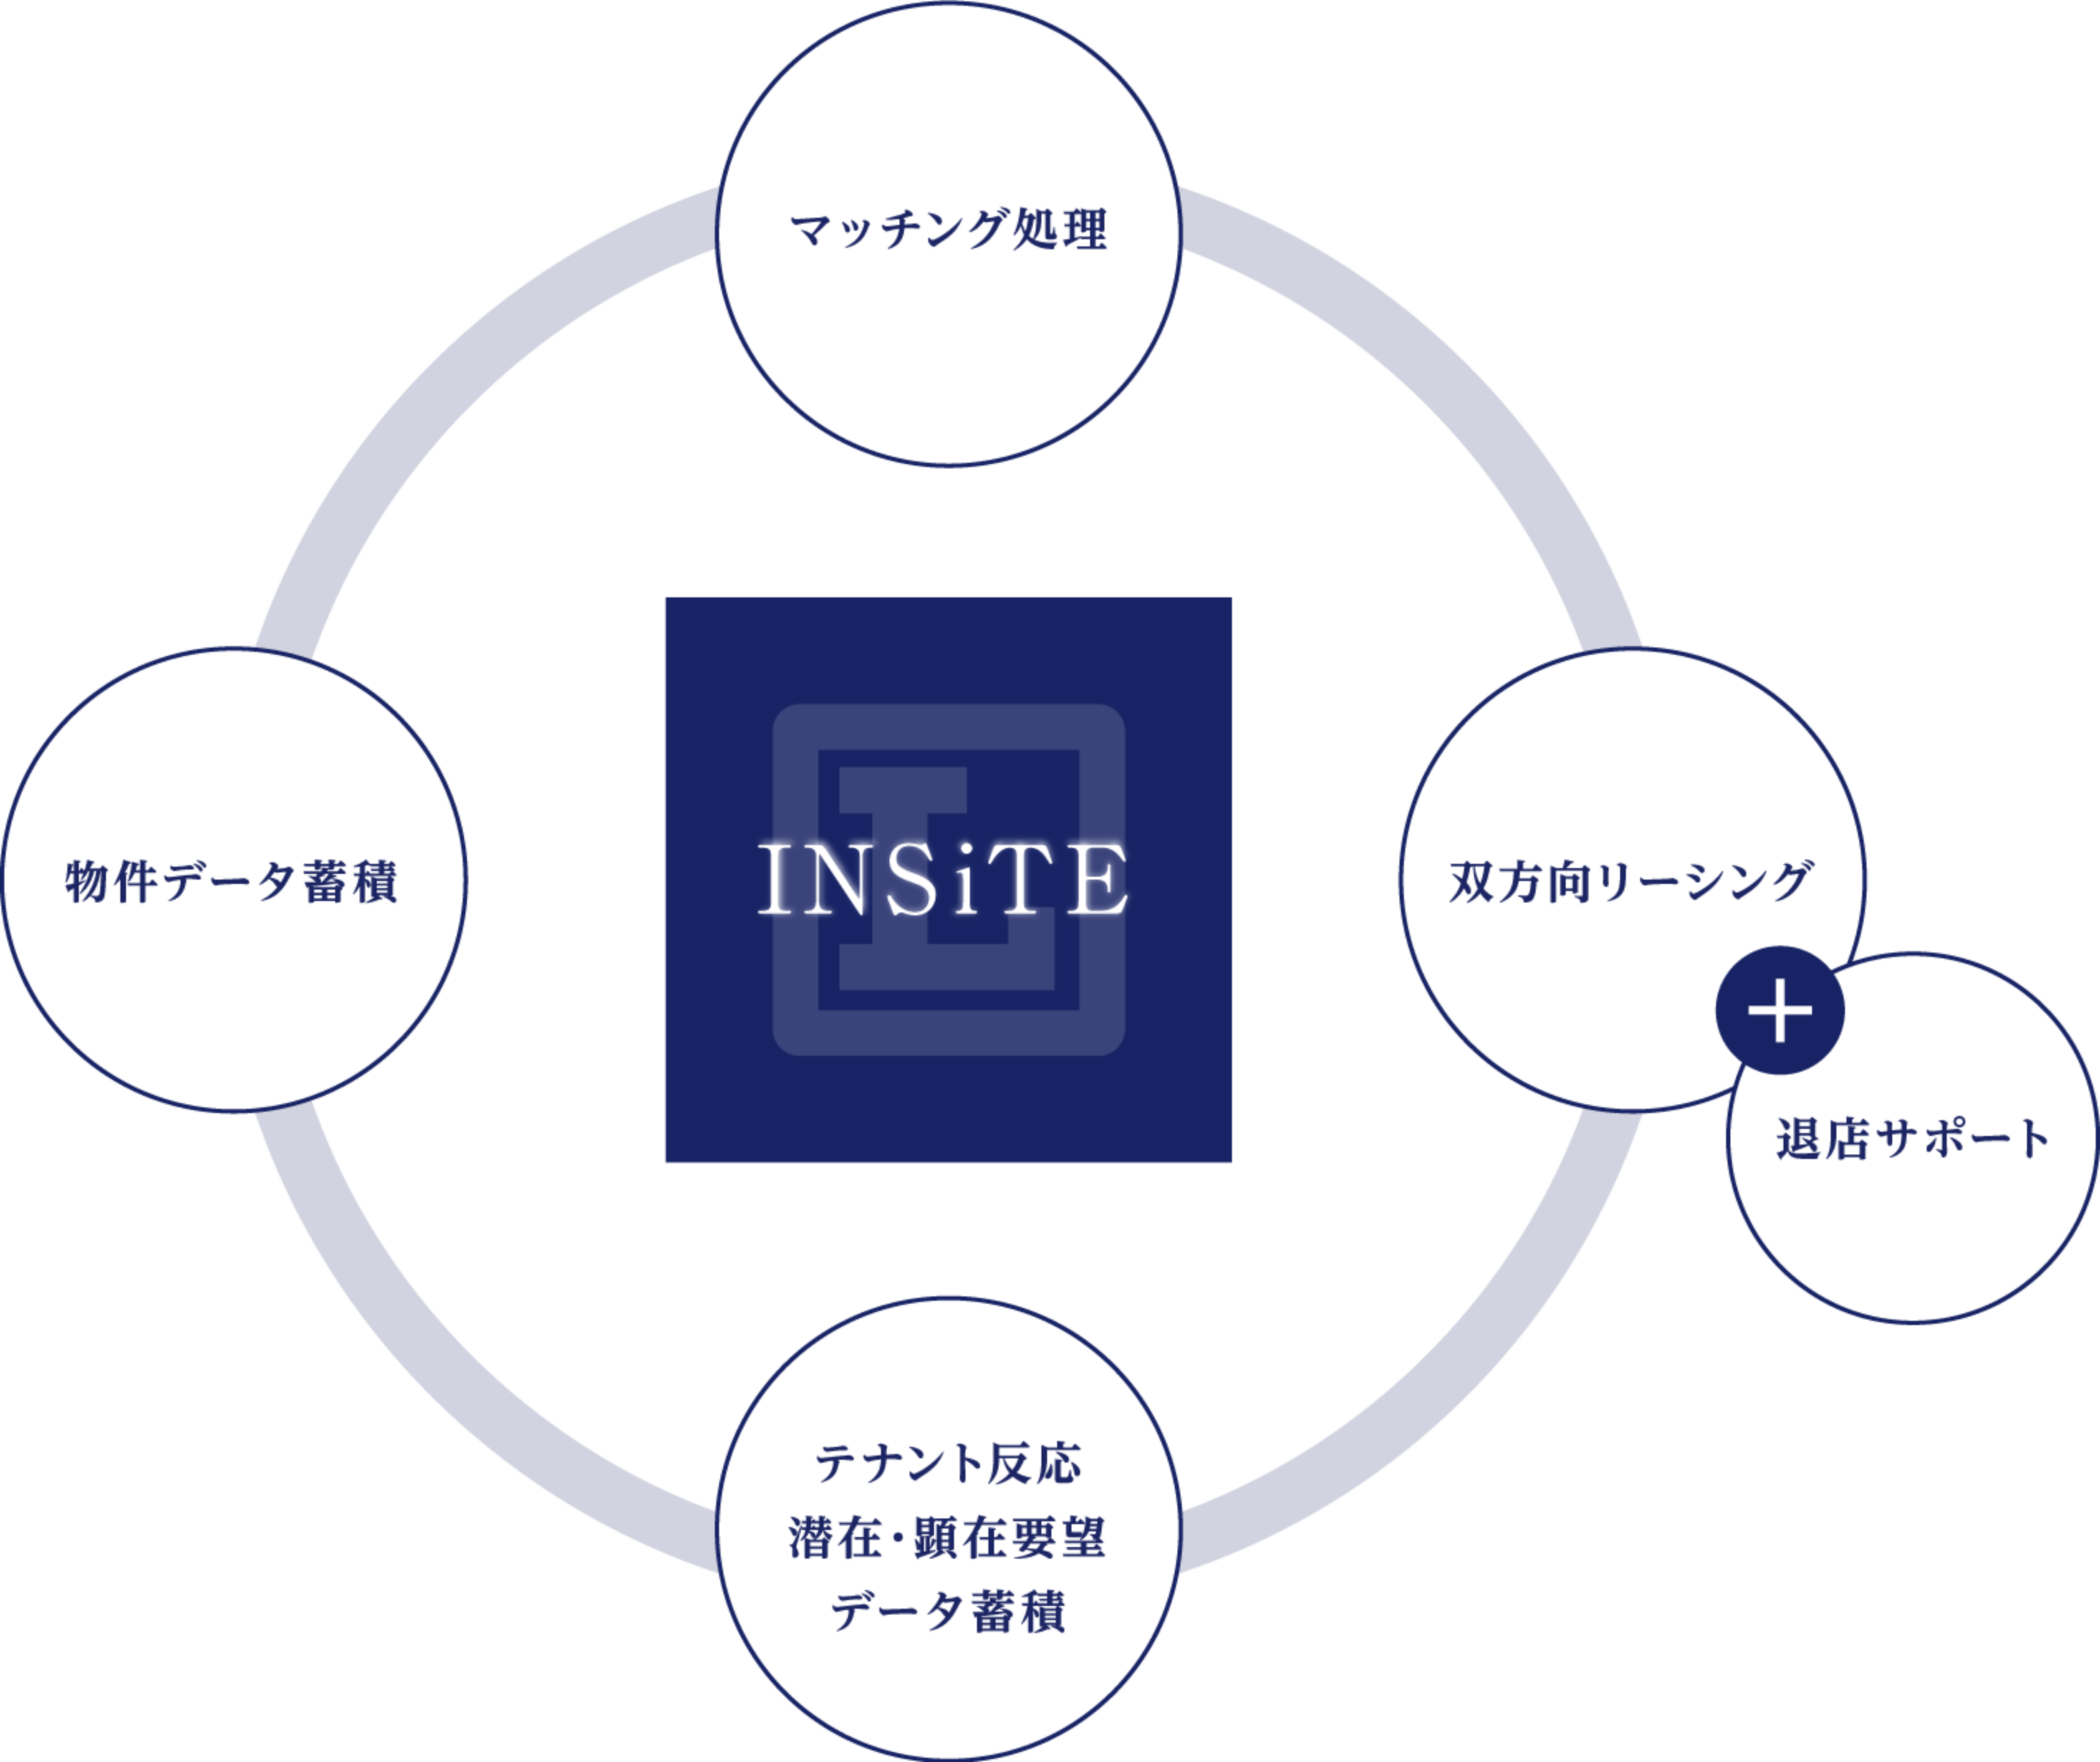 insiteはAIマッチング処理、物件データ蓄積、テナント反応、潜在・顕在要望、データ蓄積、双方向リーシングと退店サポート